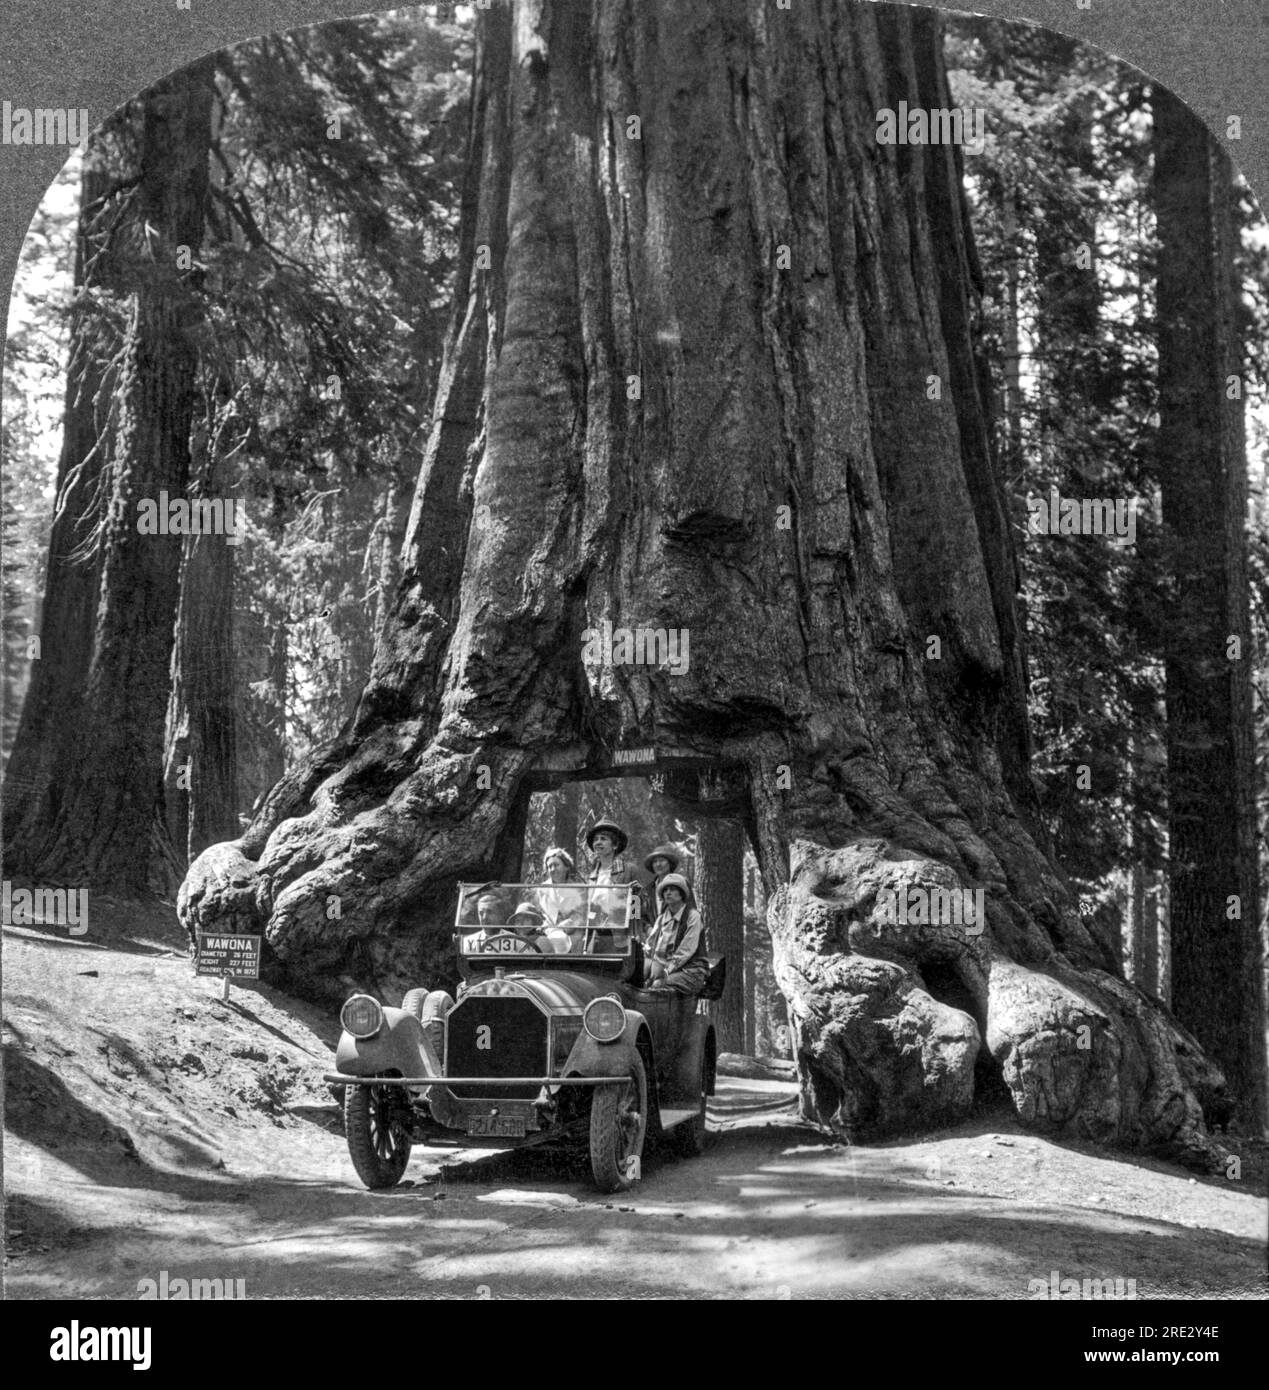 Yosemite National Park, California: 1915 circa. Il gigantesco albero di sequoia "Wawona" nel Parco Nazionale di Yosemite. Il tunnel è stato tagliato attraverso una cicatrice antincendio esistente nel 1875. L'albero aveva un diametro di 28 piedi. Cadde nel 1969 sotto un carico di neve stimato di due tonnellate sulla sua corona. Si pensava avesse 2.300 anni. Foto Stock